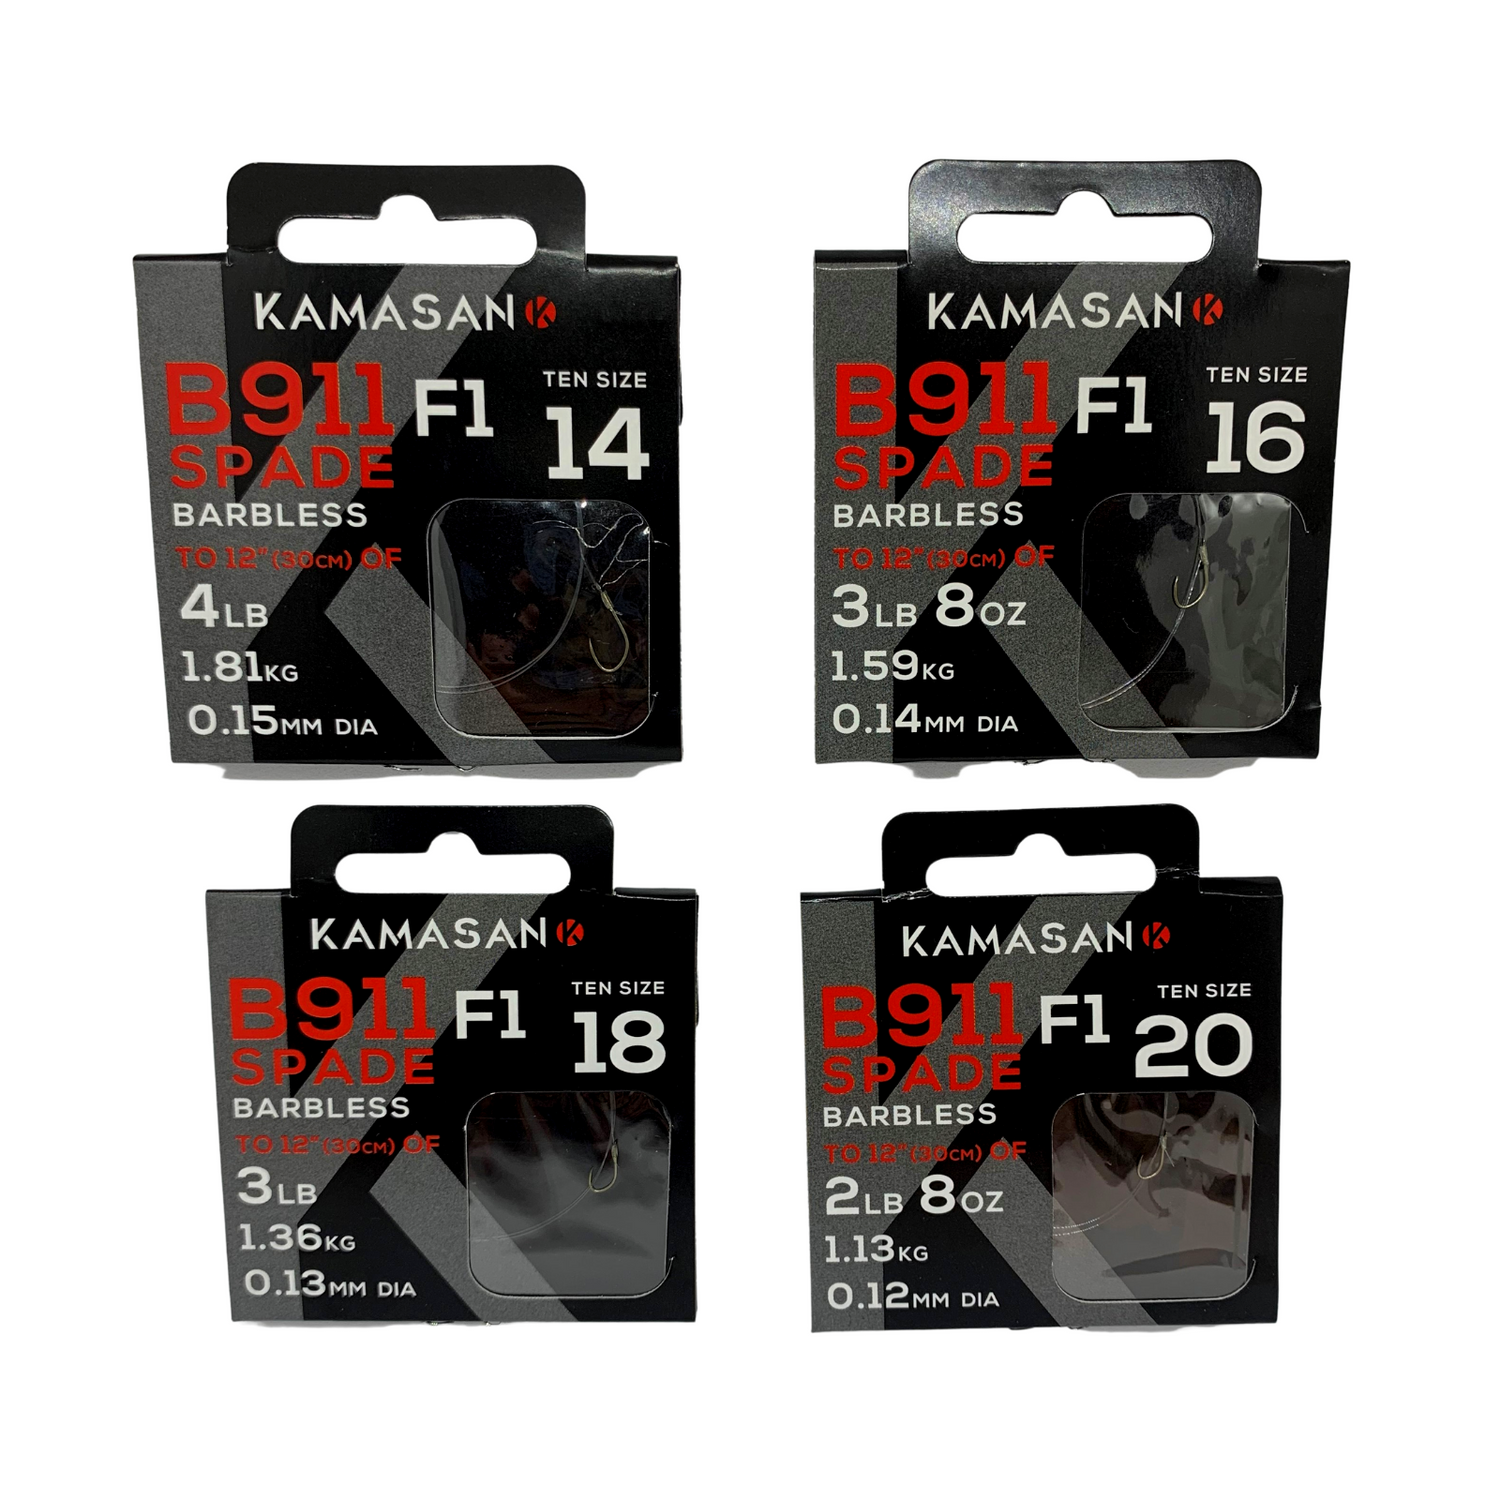 Kamasan B911F1 Hooks To Nylon - 4 Sizes Available.